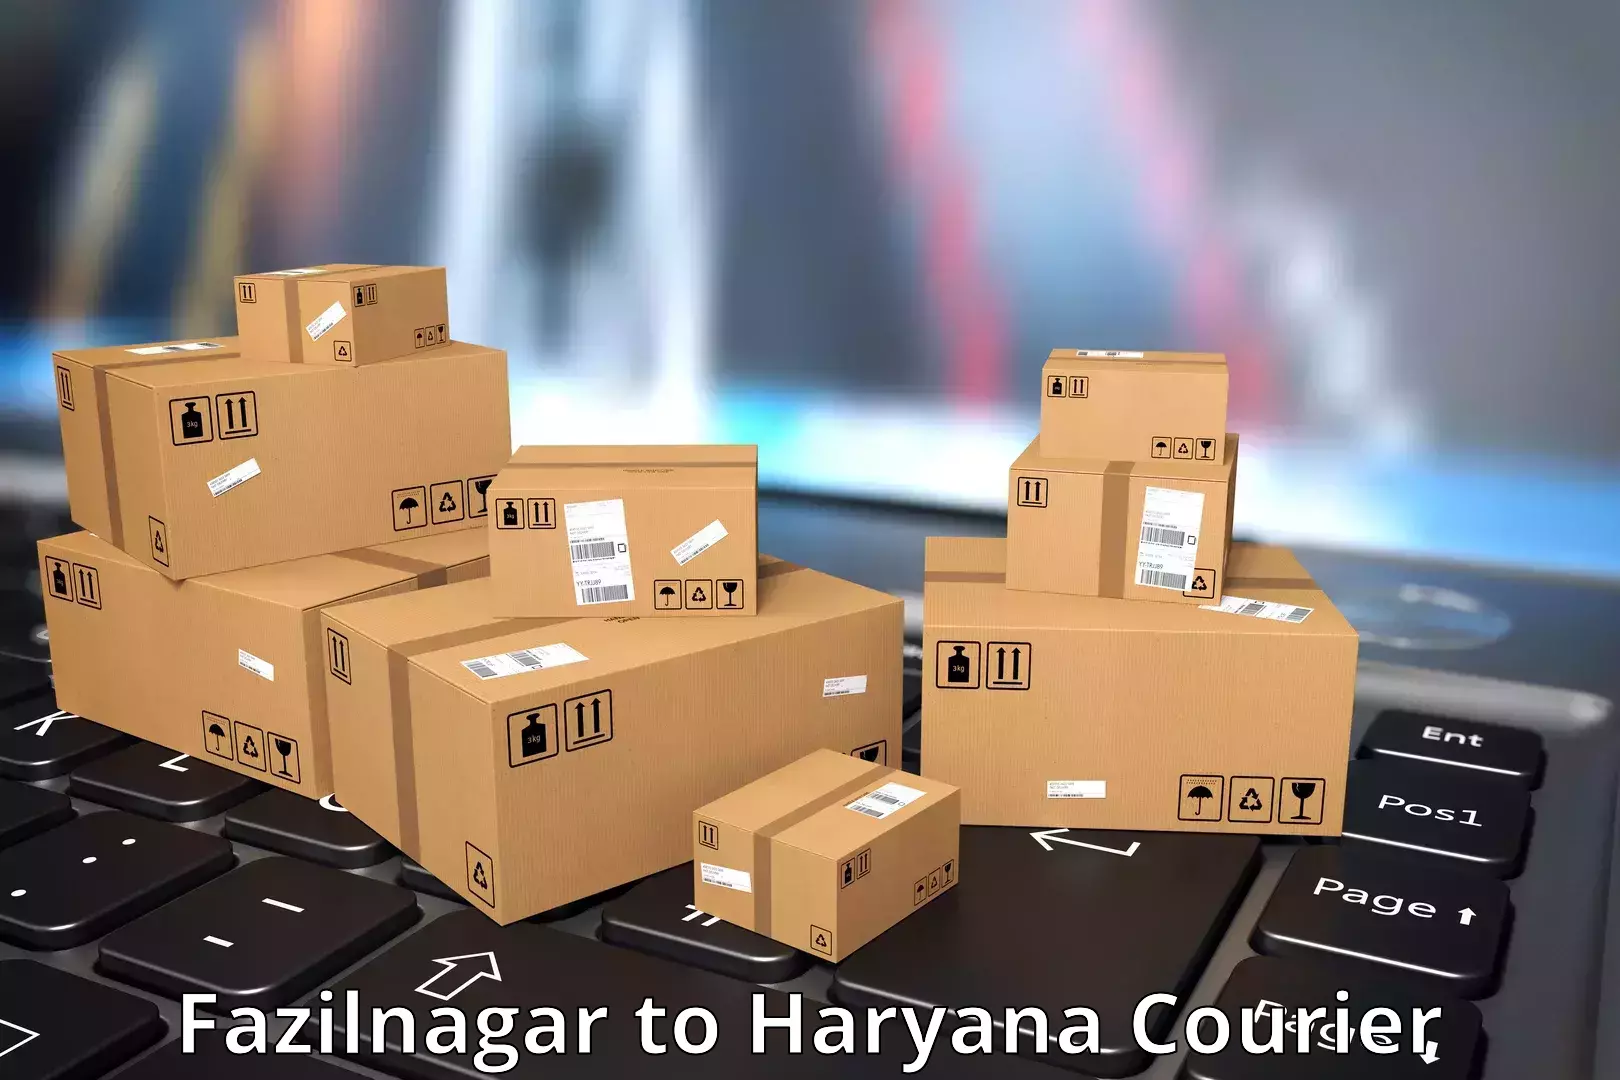 User-friendly courier app Fazilnagar to Charkhari